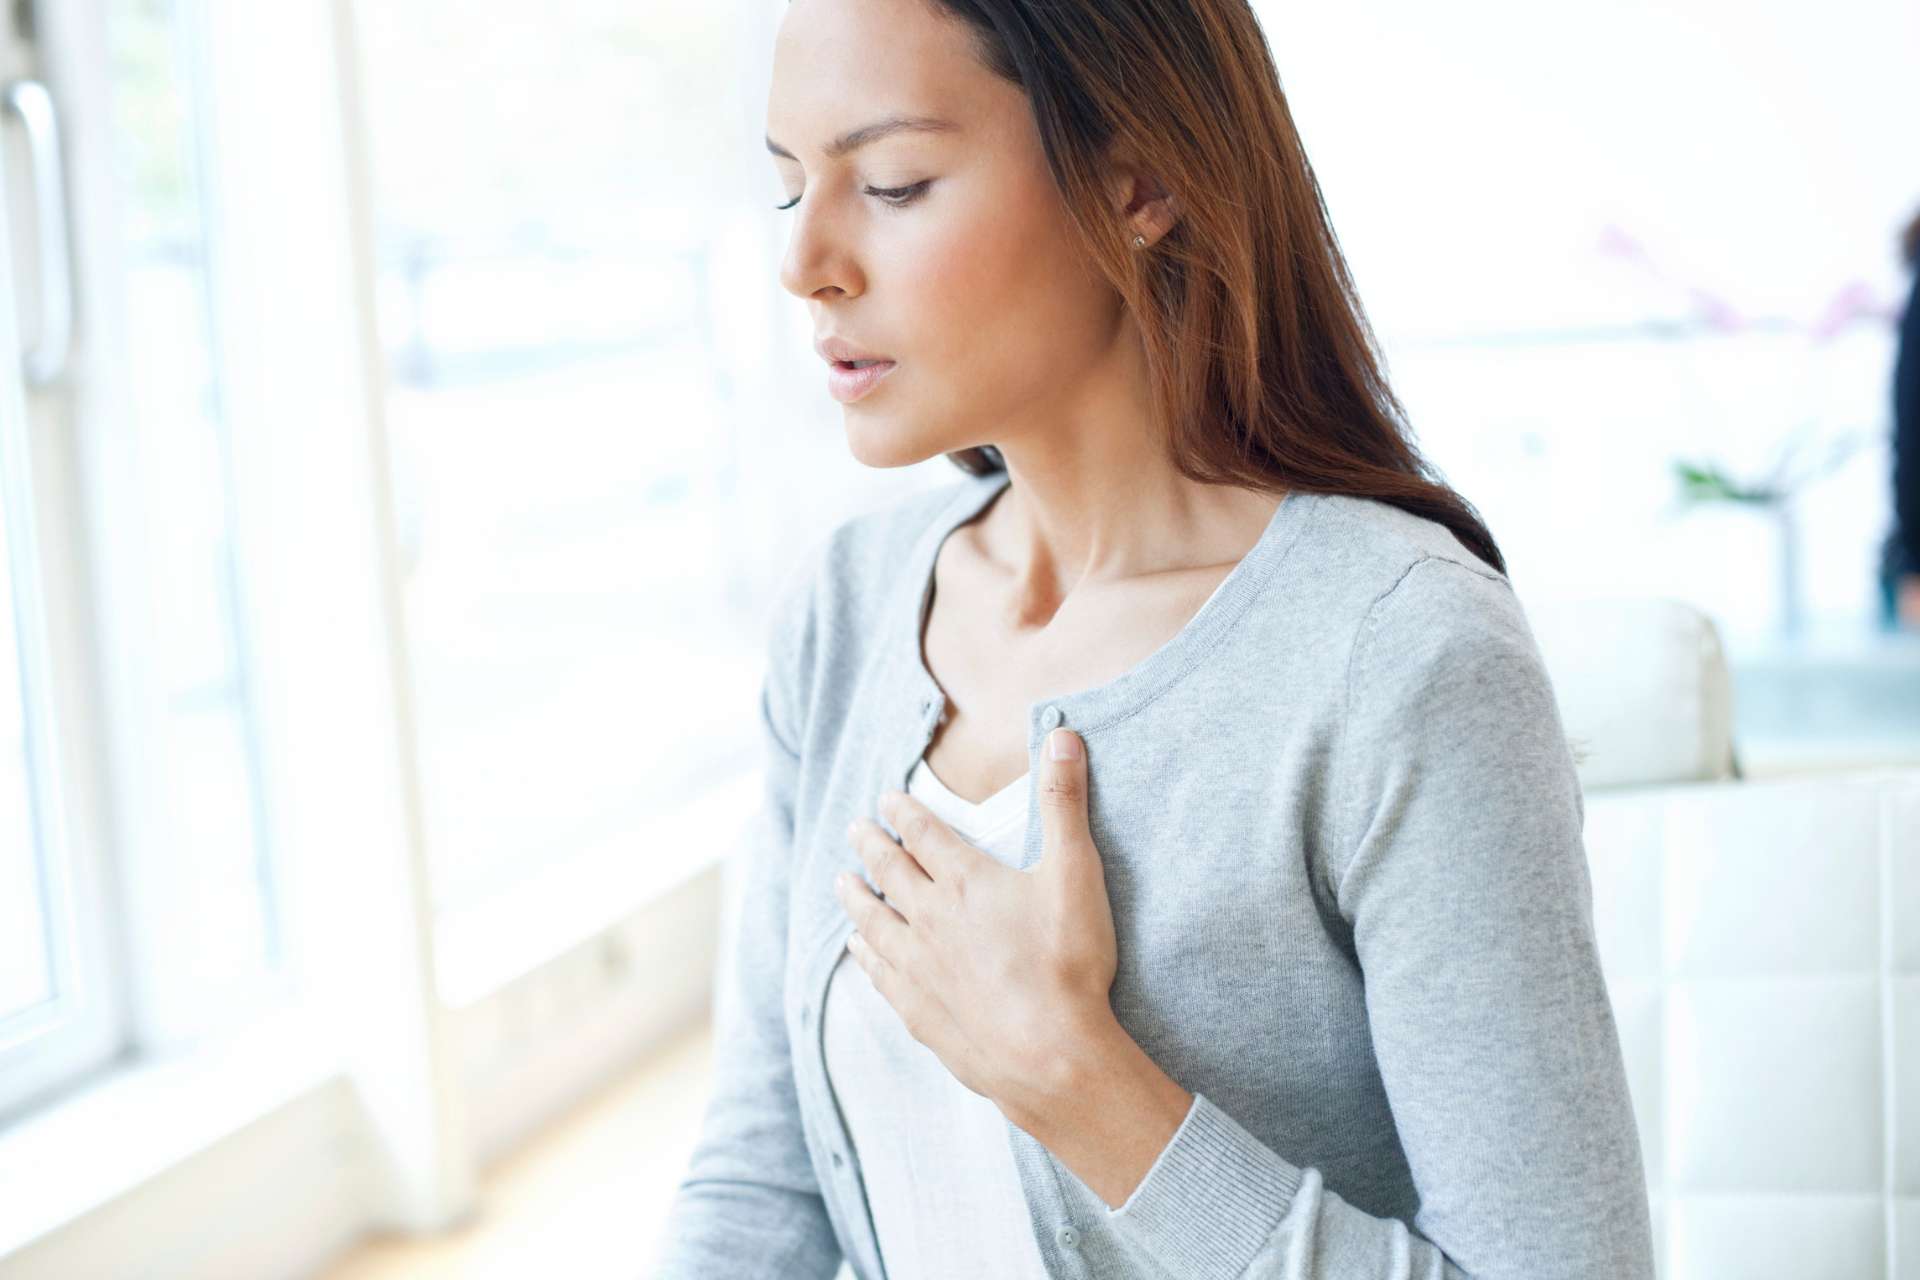 O inchaço pode causar ritmos cardíacos anormais, sensação de aperto e peso no peito e dificuldade para respirar